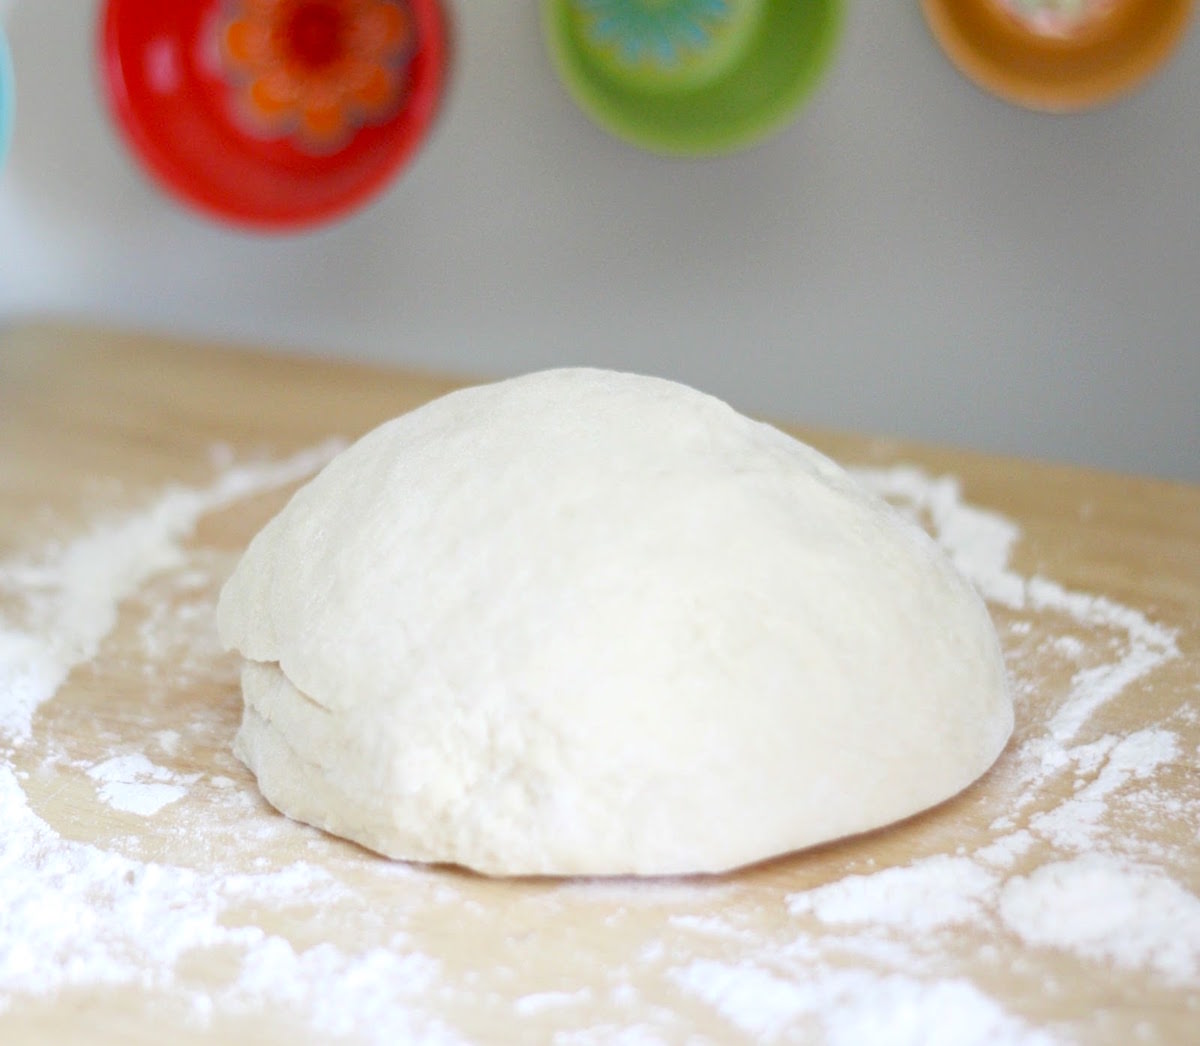 Kneaded dough on a floured surface